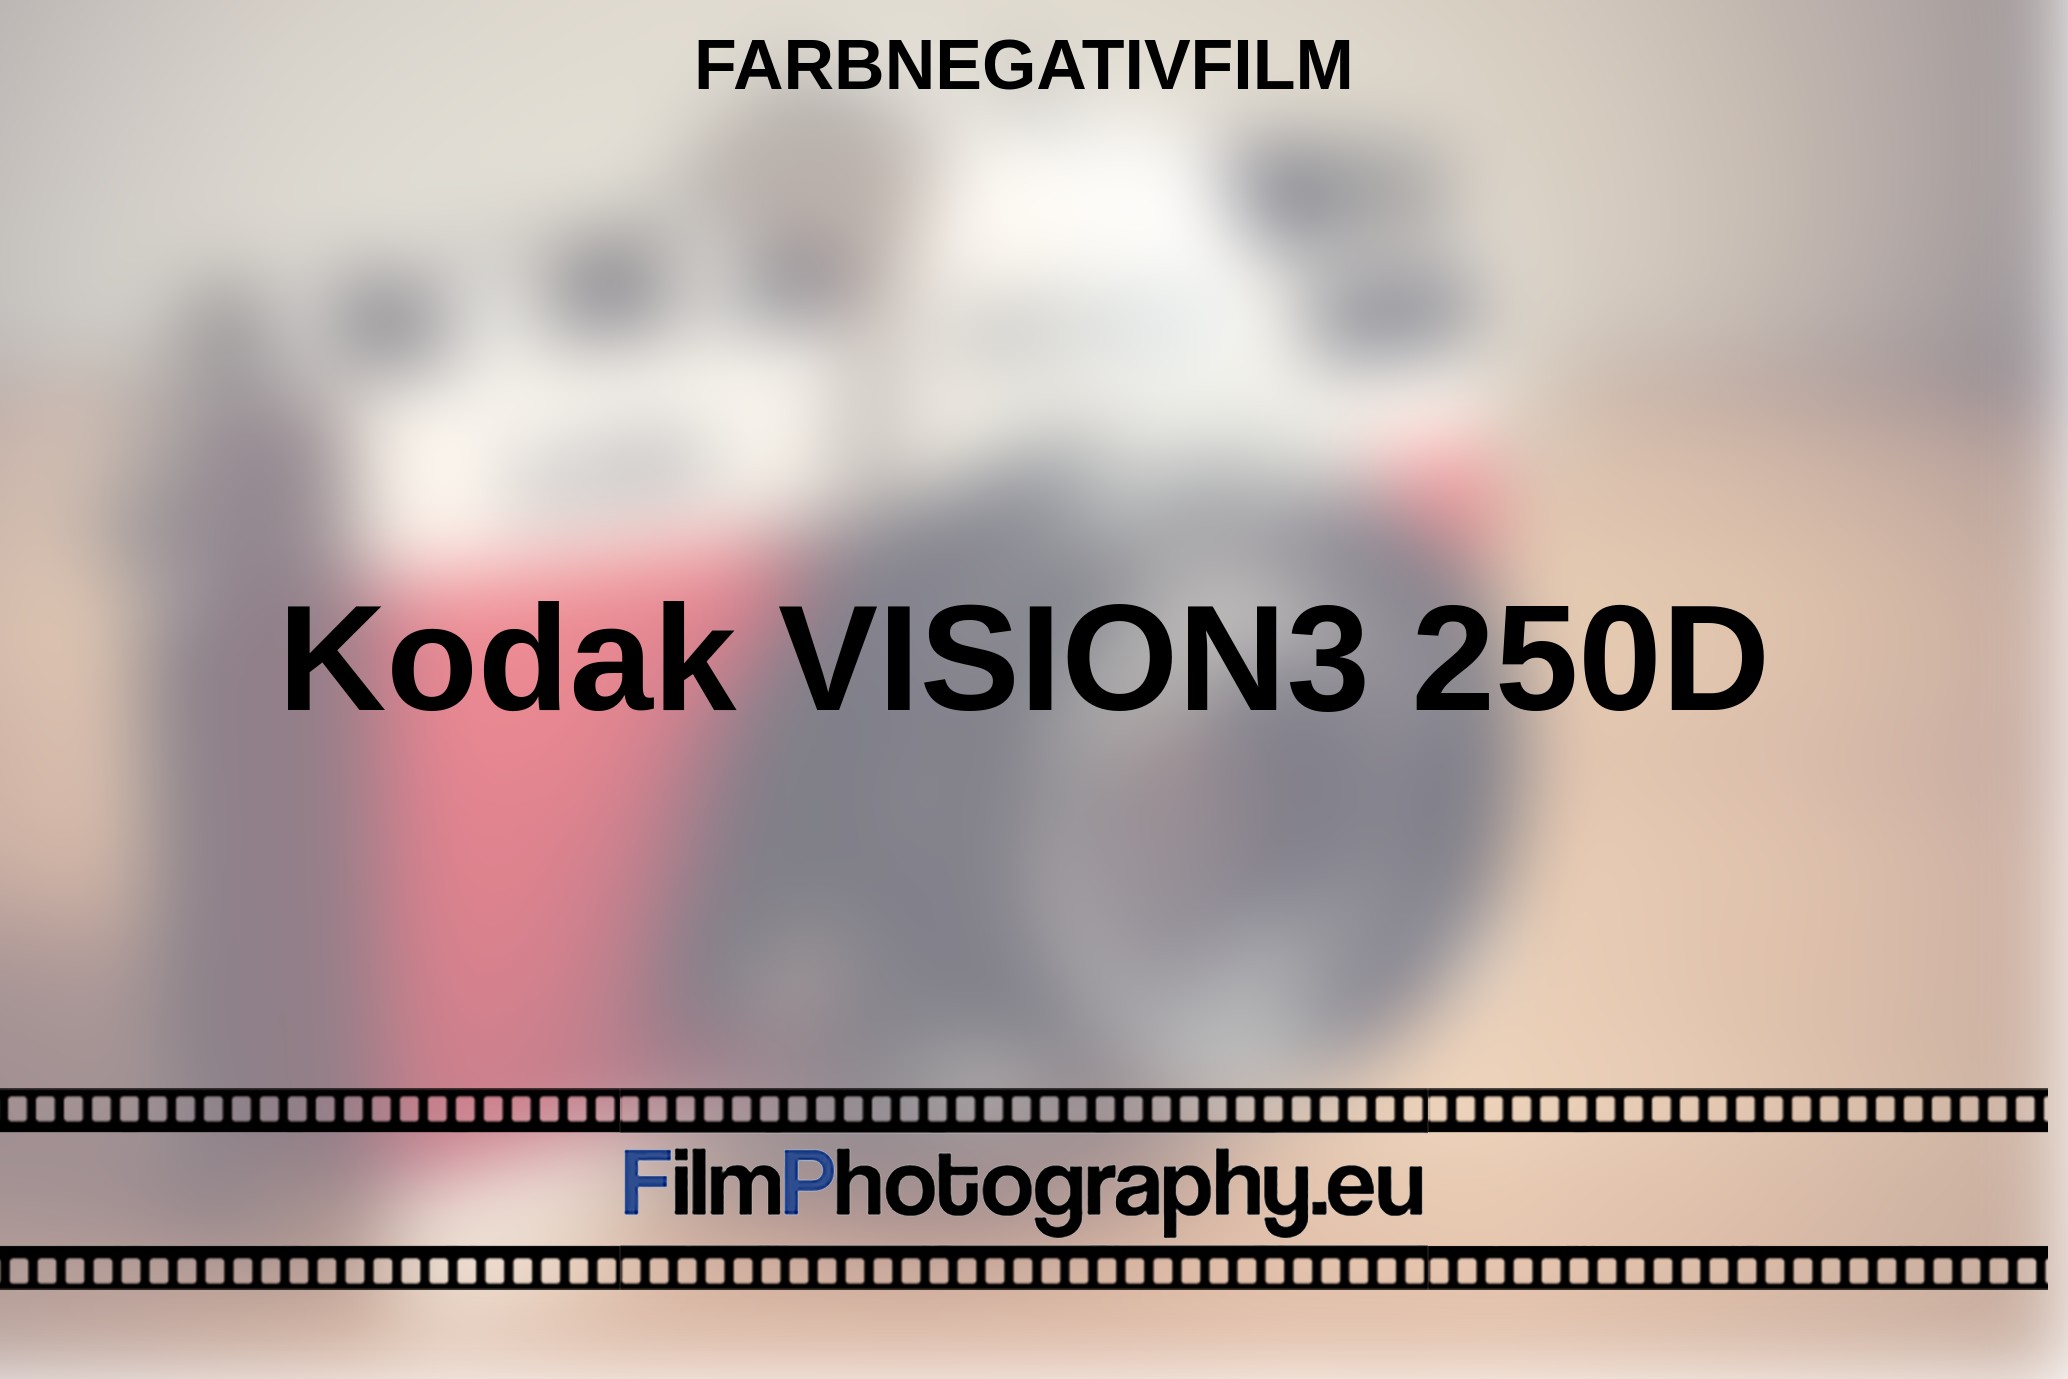 Kodak-VISION3-250D-Farbnegativfilm-bnv.jpg